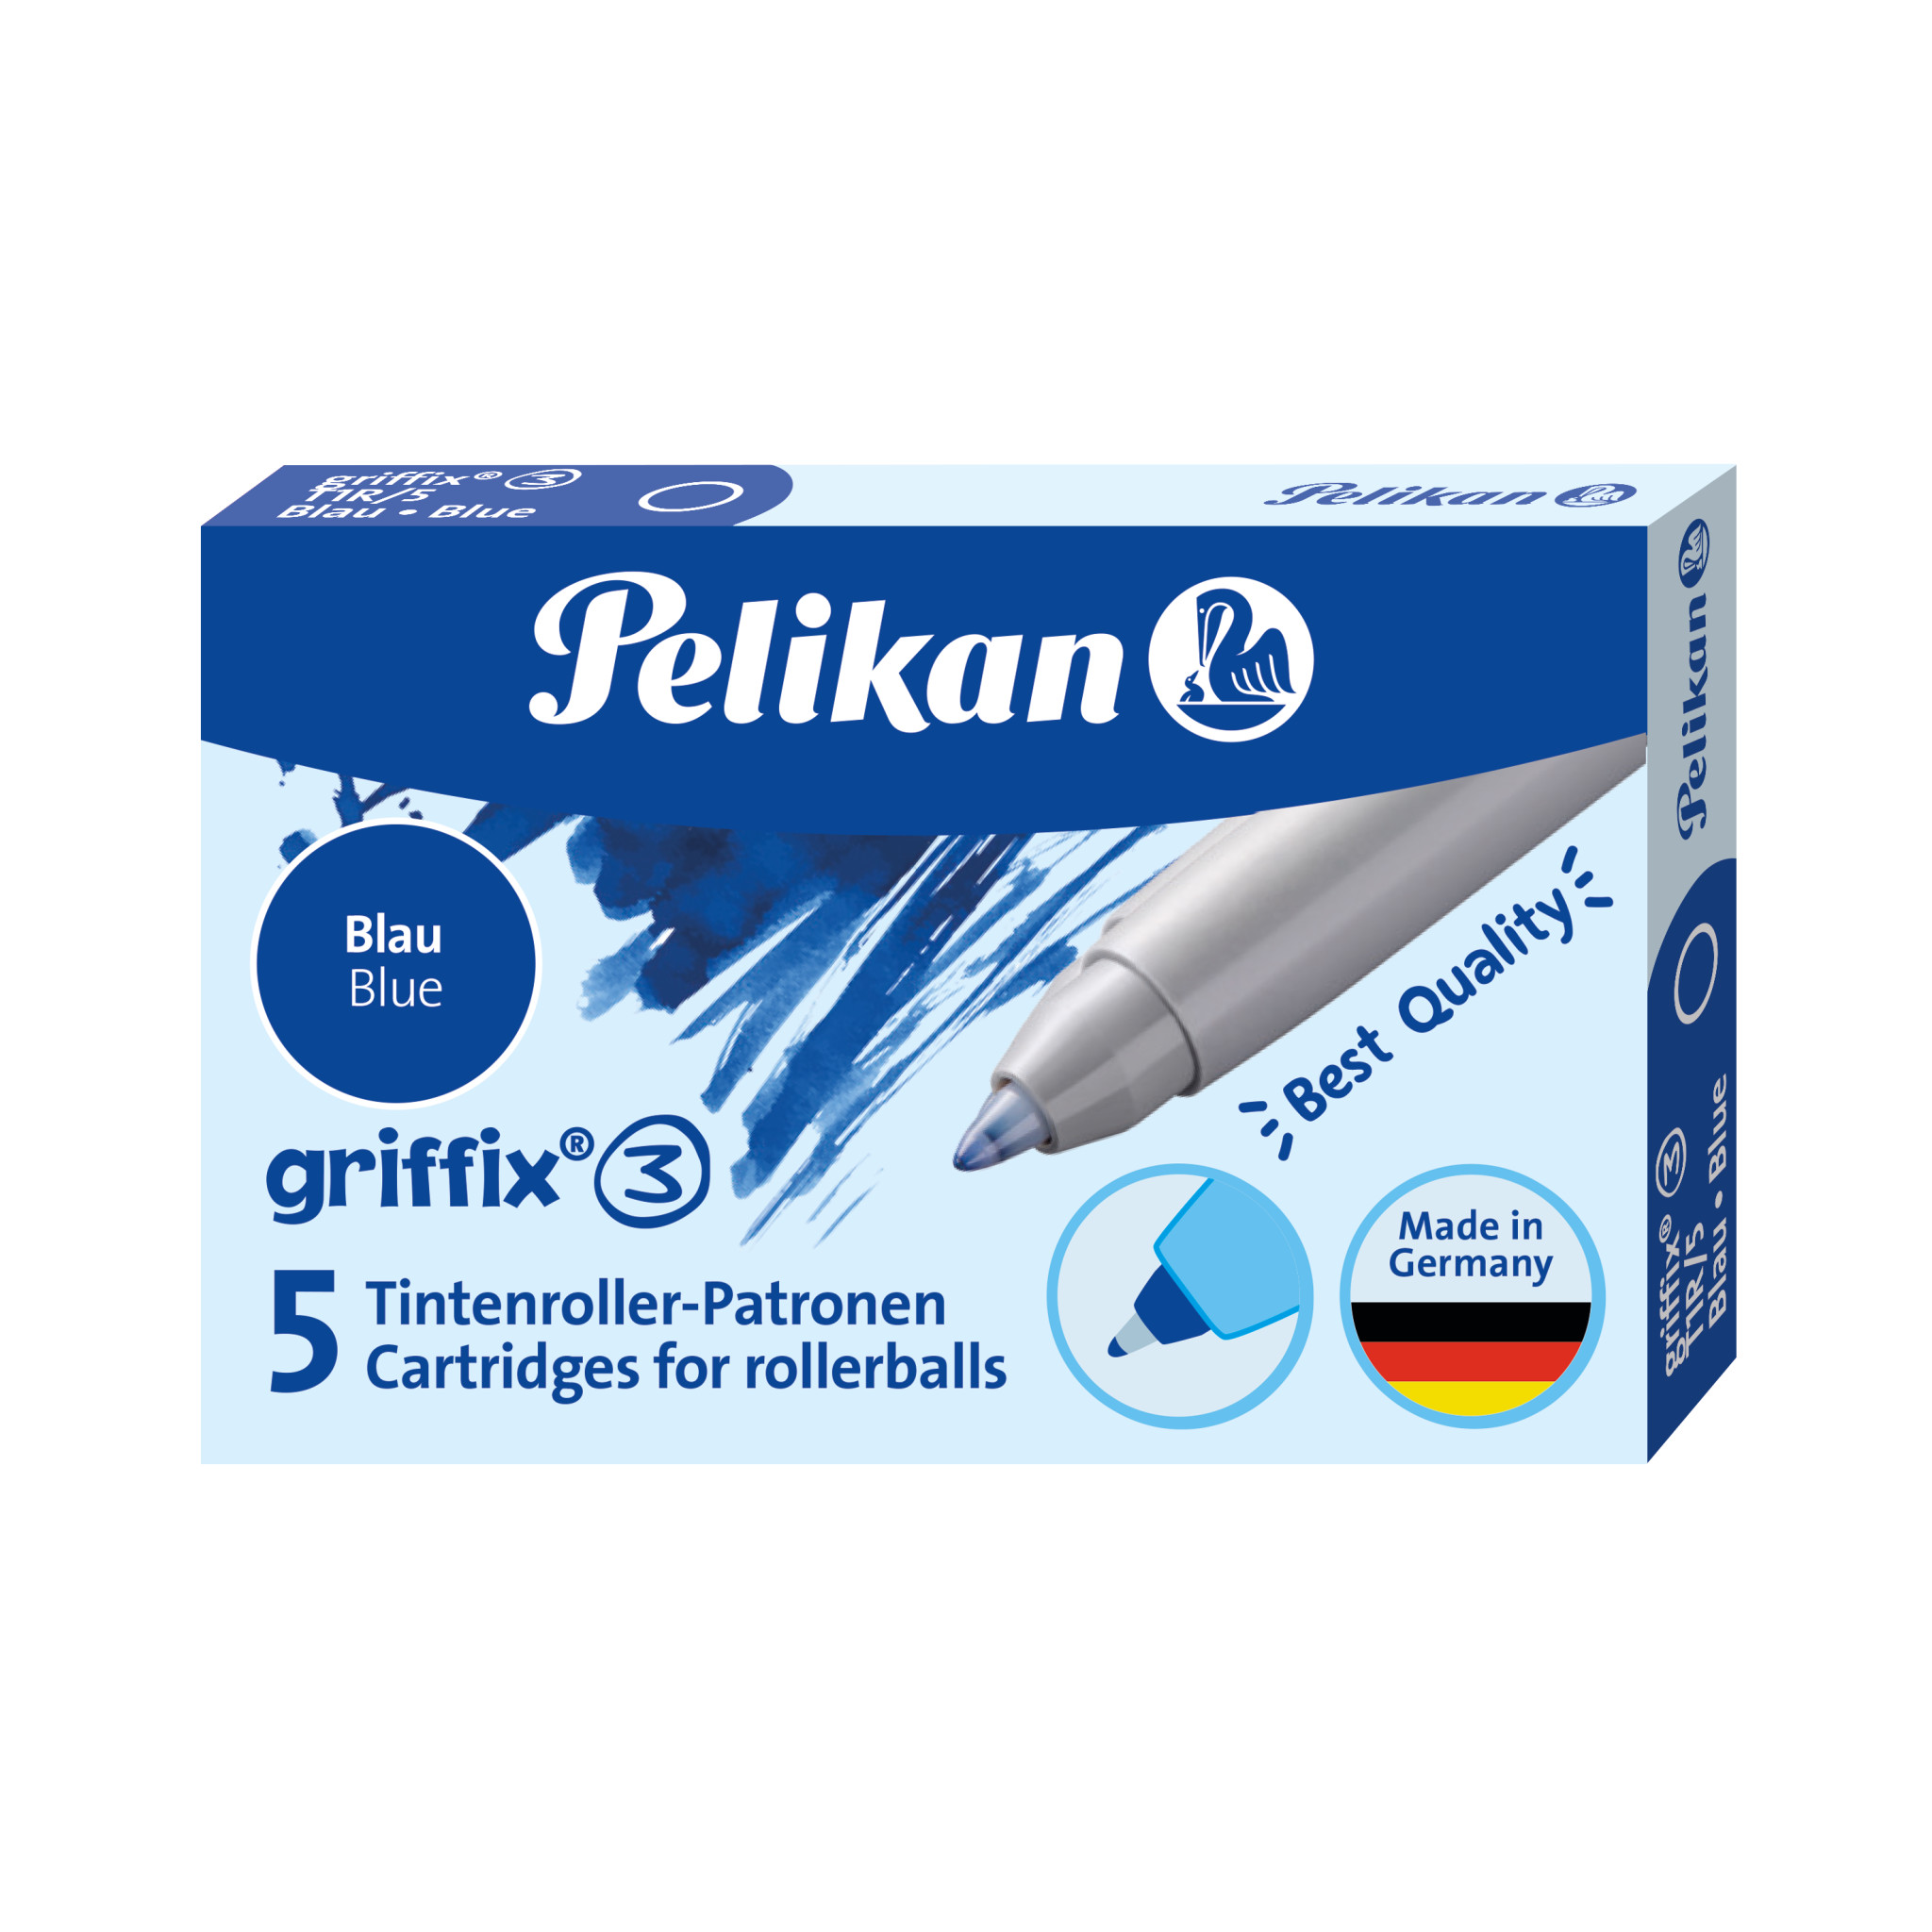 Pelikan - Tintenschreiberpatronen griffix - 5 Stück - Blau